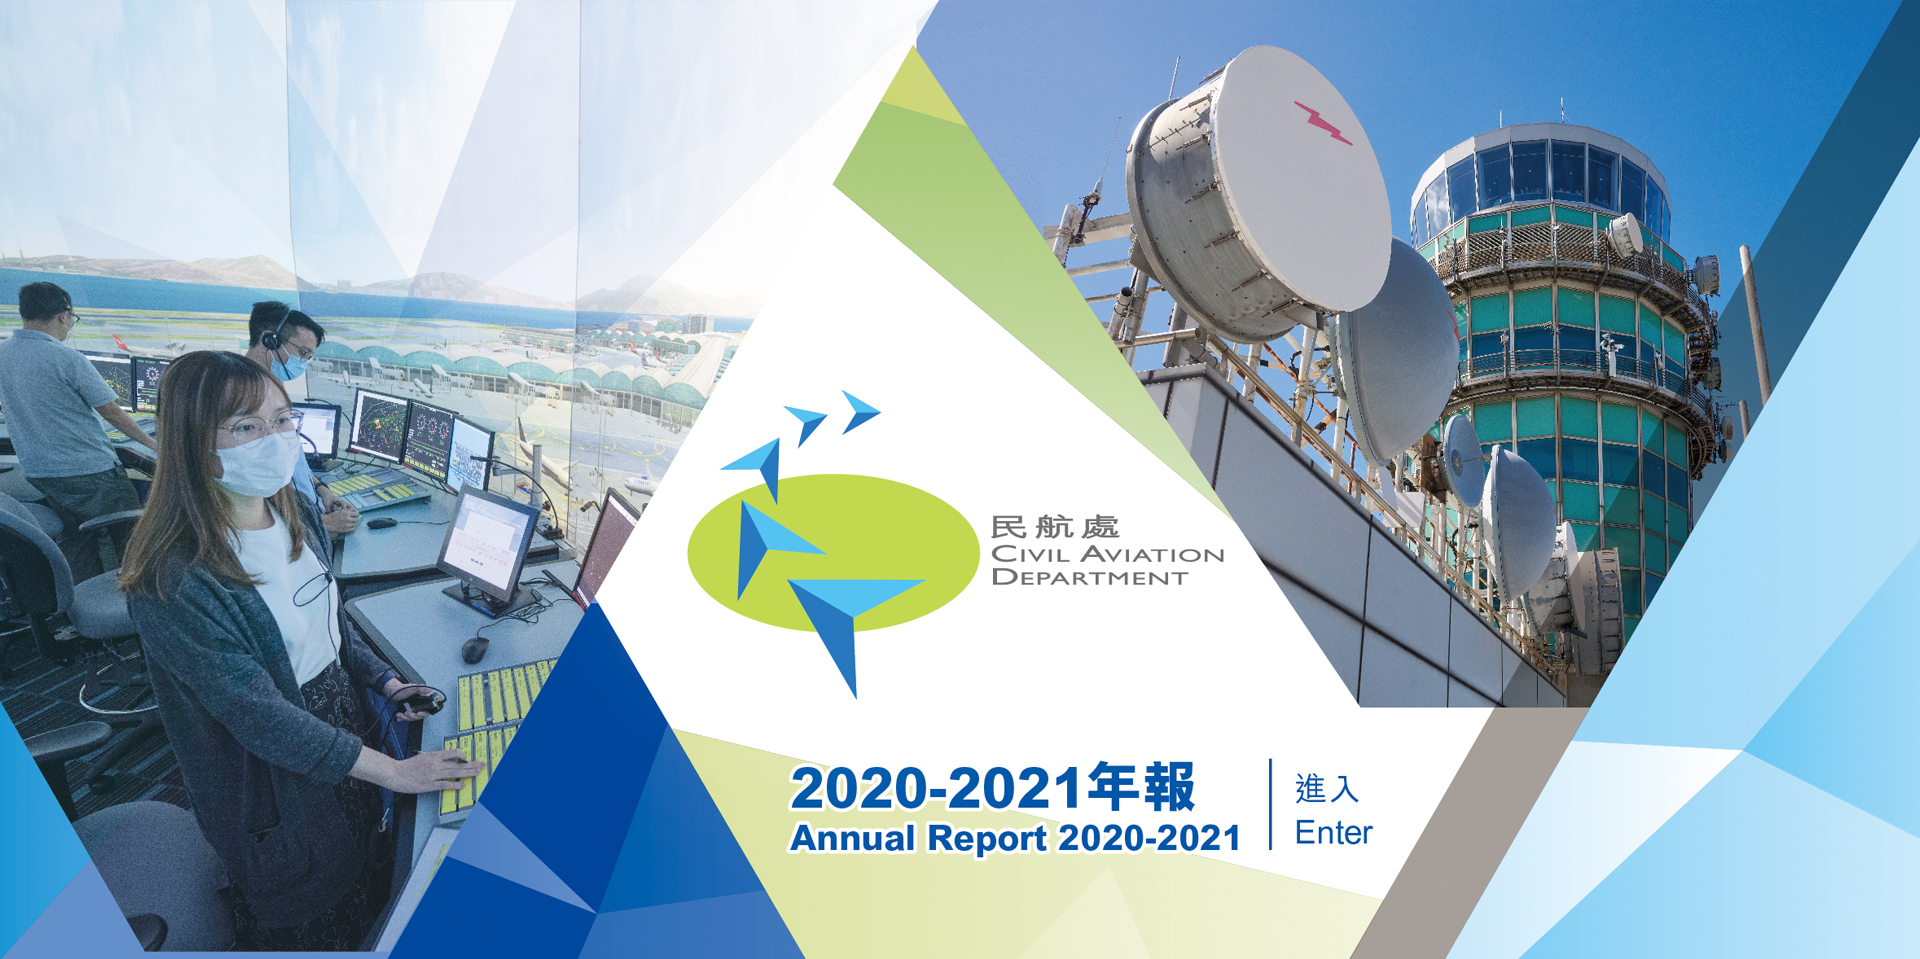 Civil Aviation Department Annual Report 2020-2021